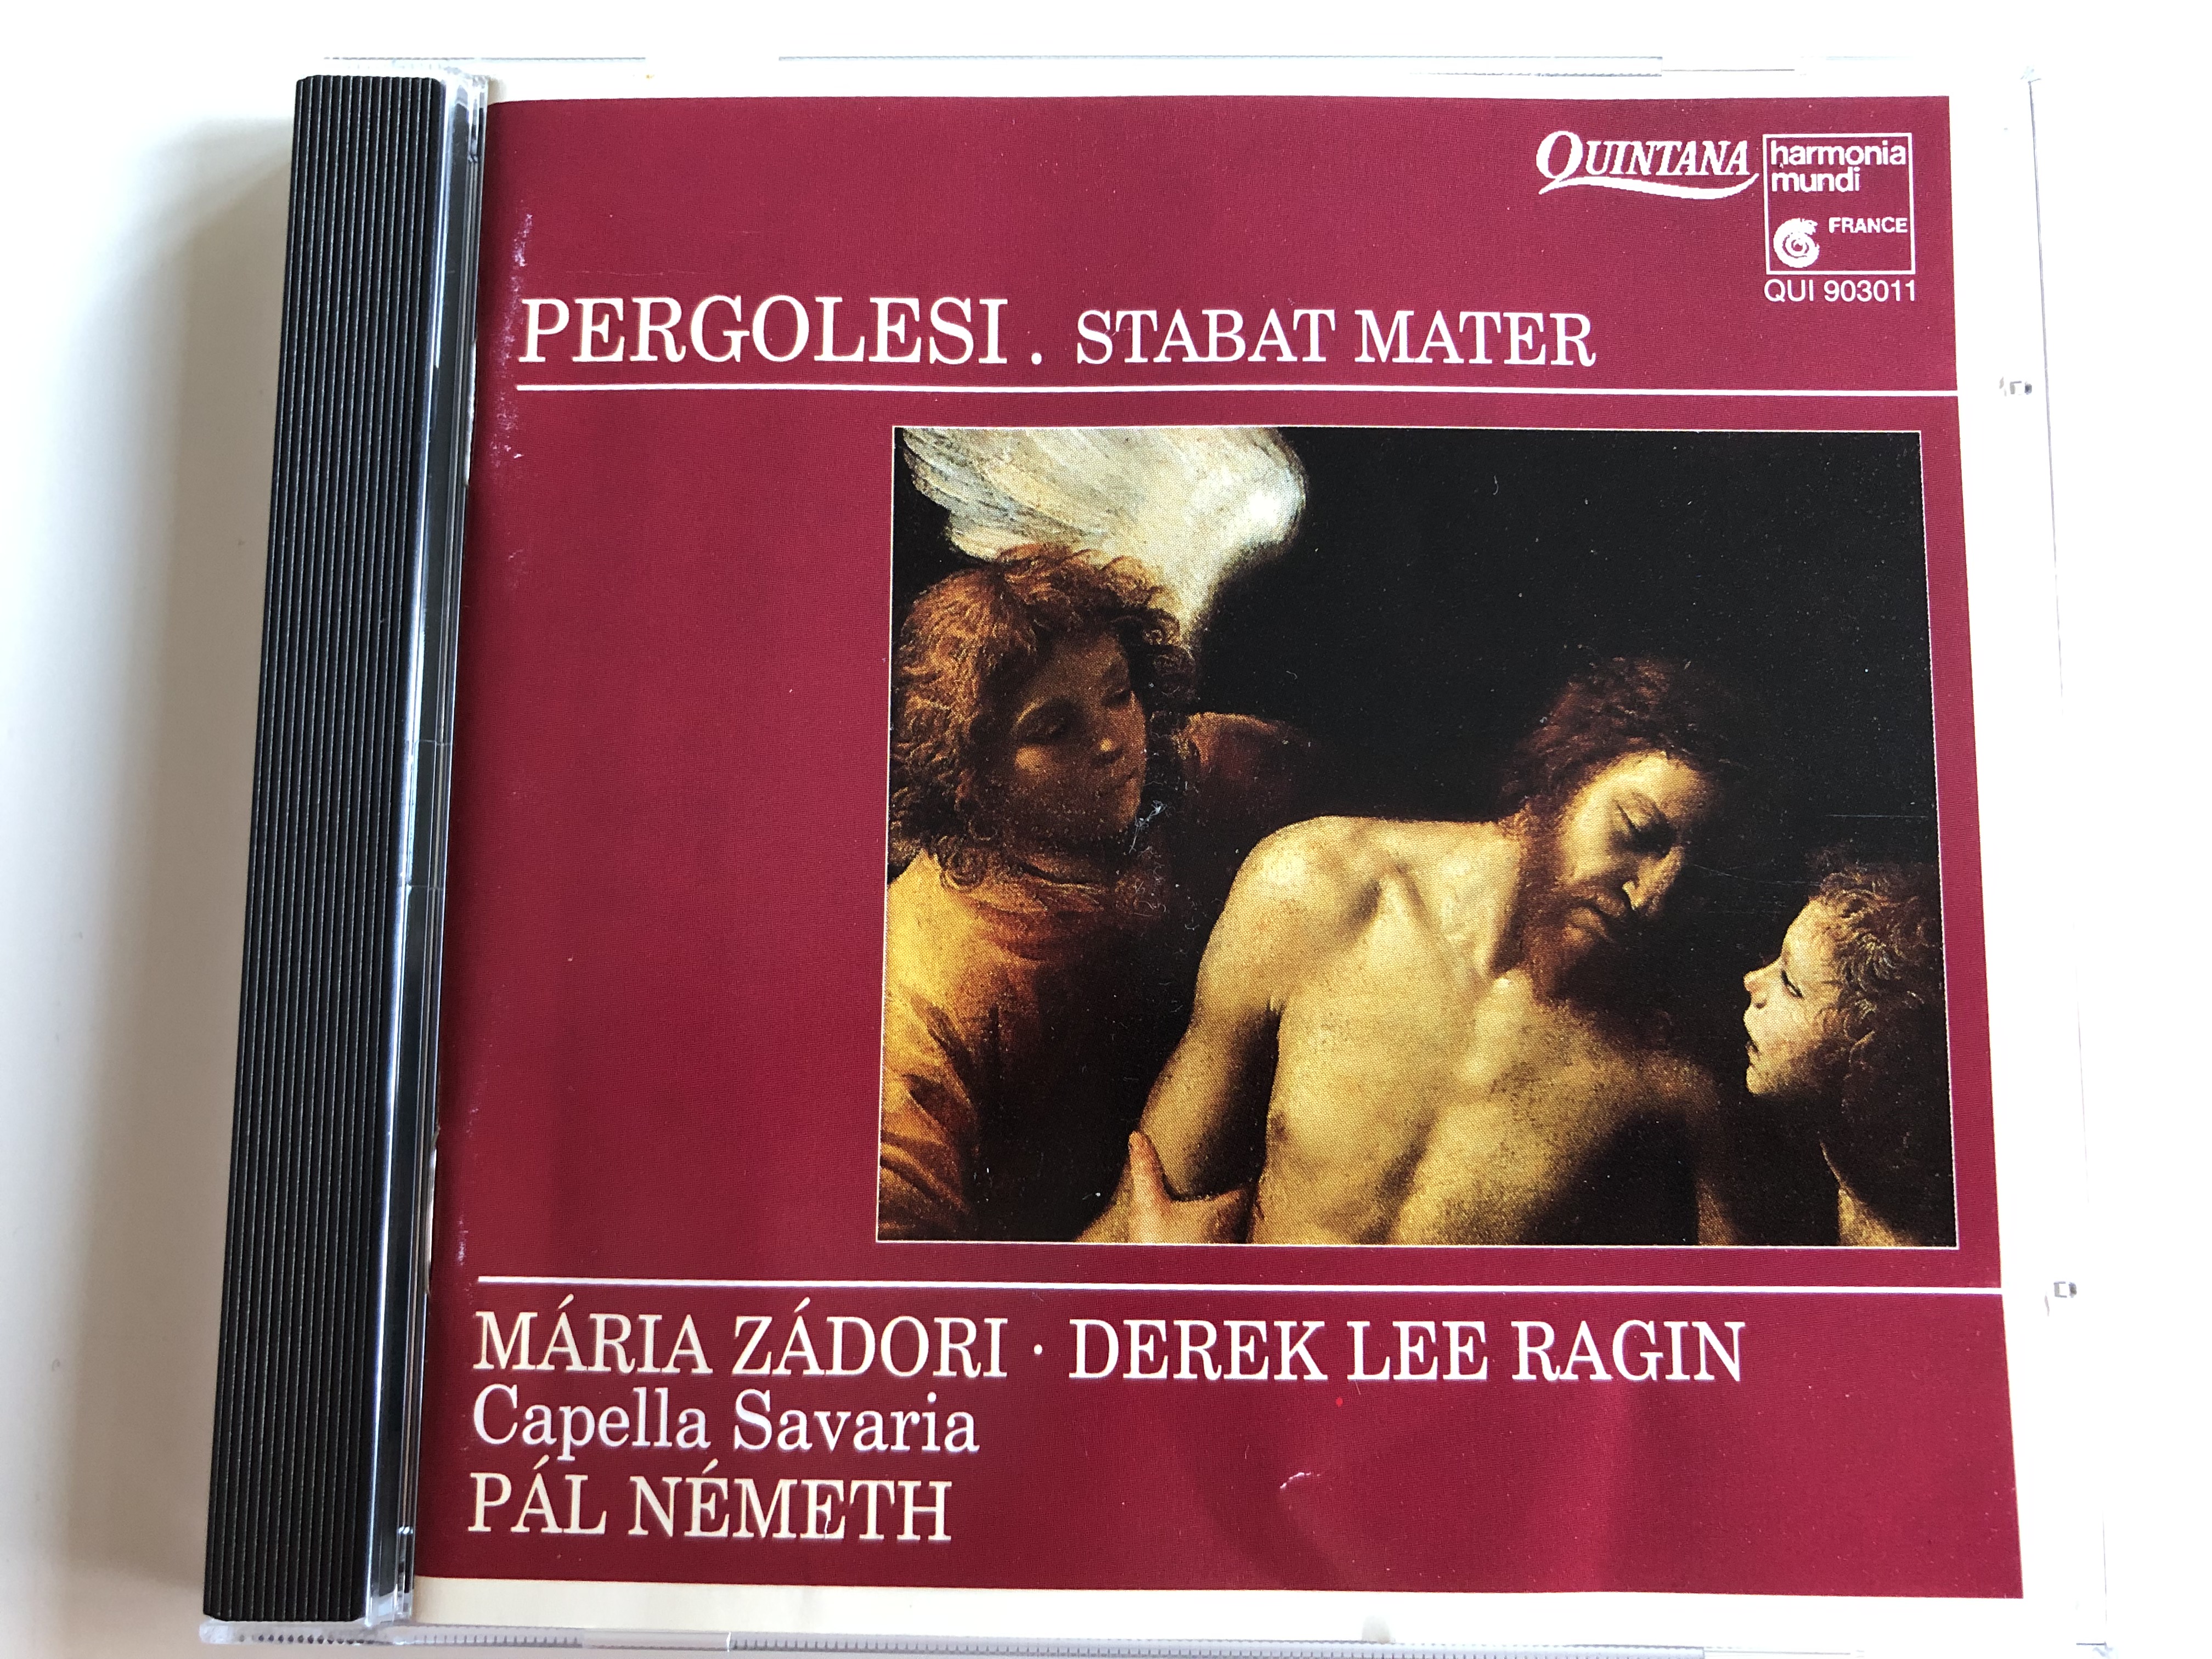 pergolesi-stabat-mater-m-ria-z-dori-derek-lee-ragin-capella-savaria-p-l-n-meth-quintana-audio-cd-1991-qui-903011-1-.jpg